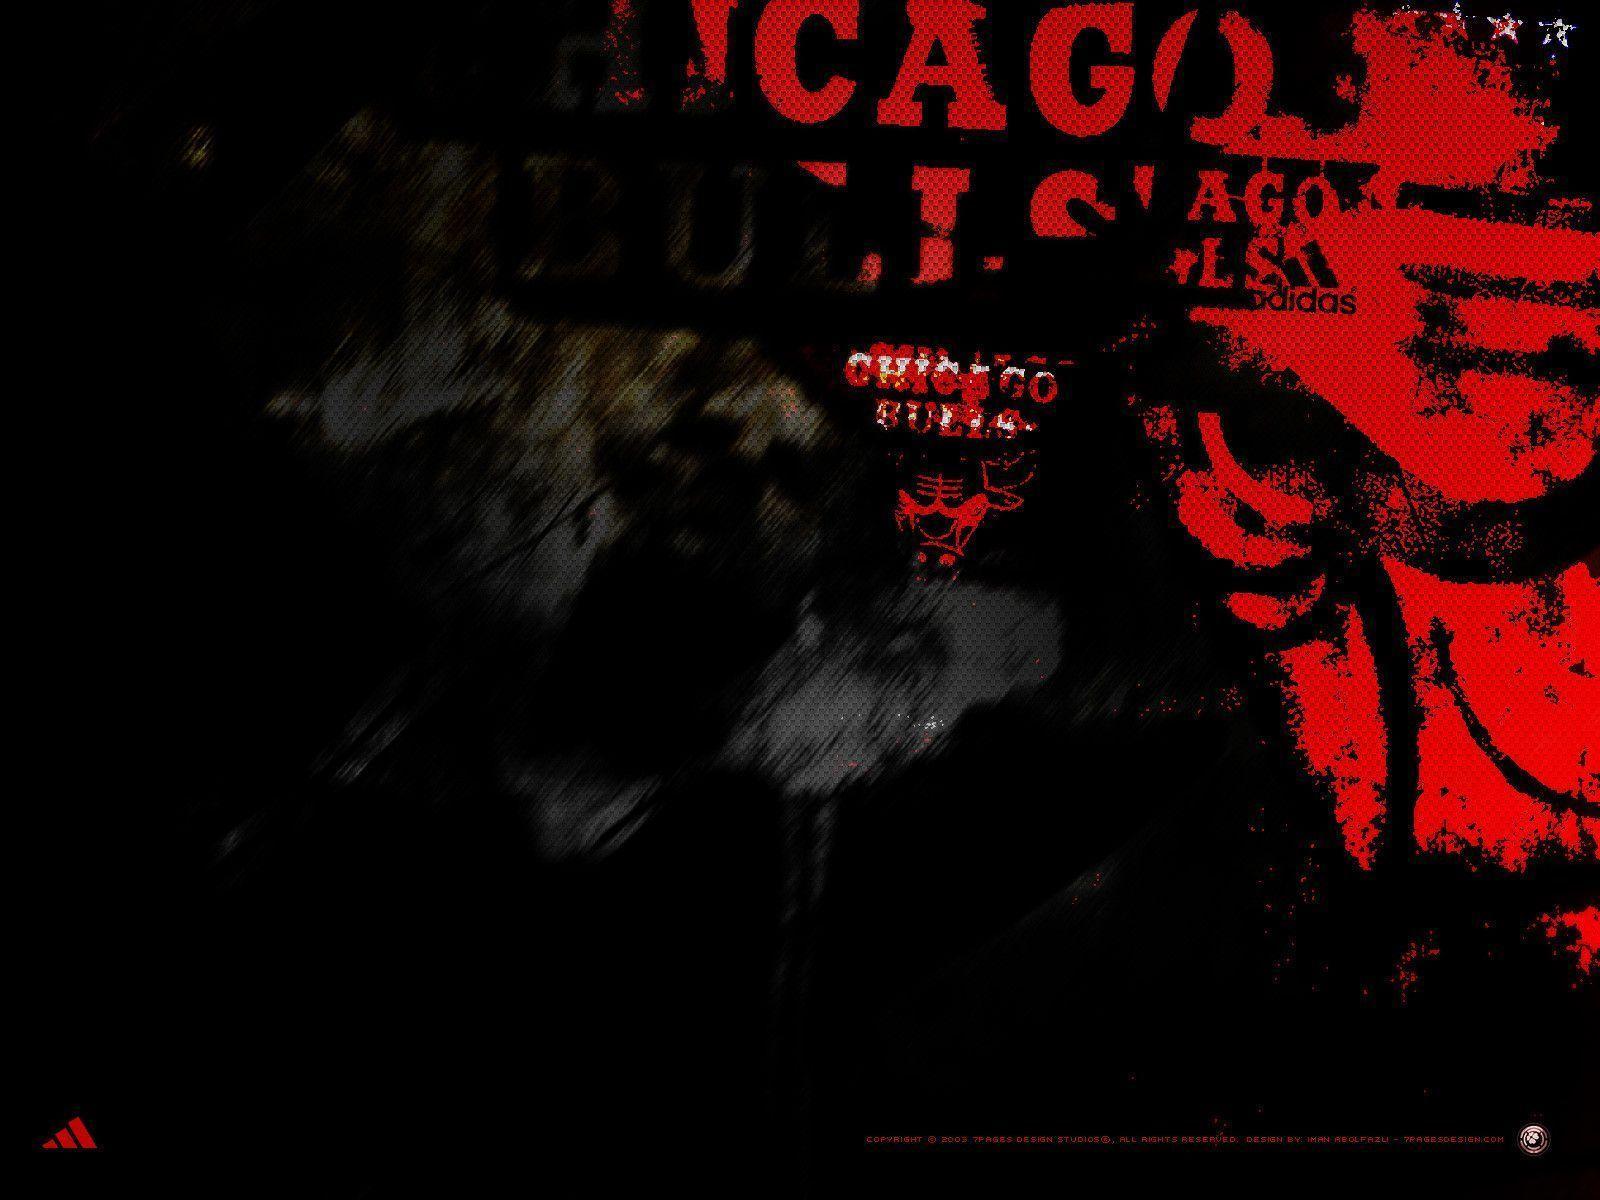 Chicago Bulls Wallpaper 36 24484 Image HD Wallpaper. Wallfoy.com